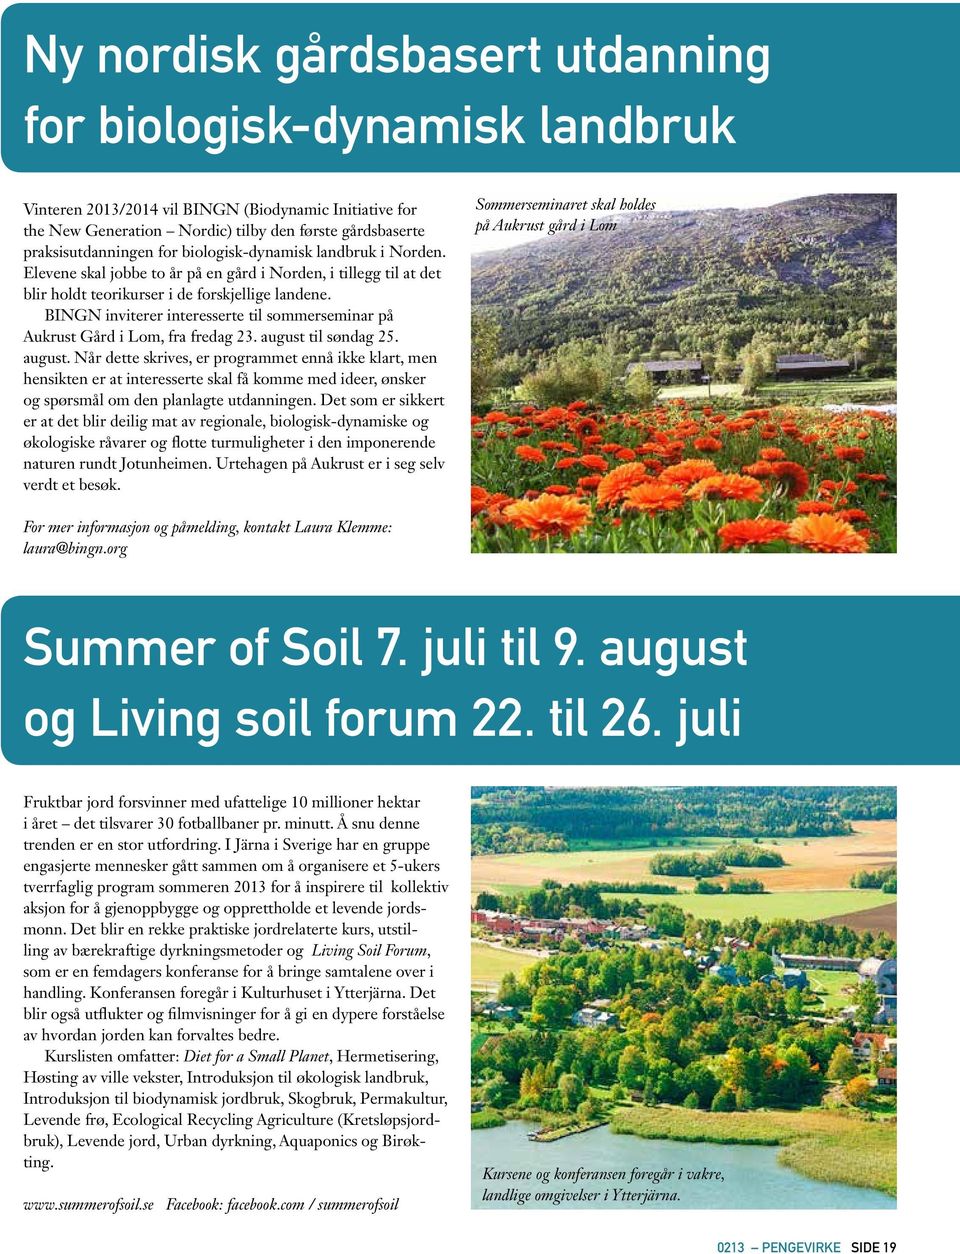 BINGN inviterer interesserte til sommerseminar på Aukrust Gård i Lom, fra fredag 23. august 